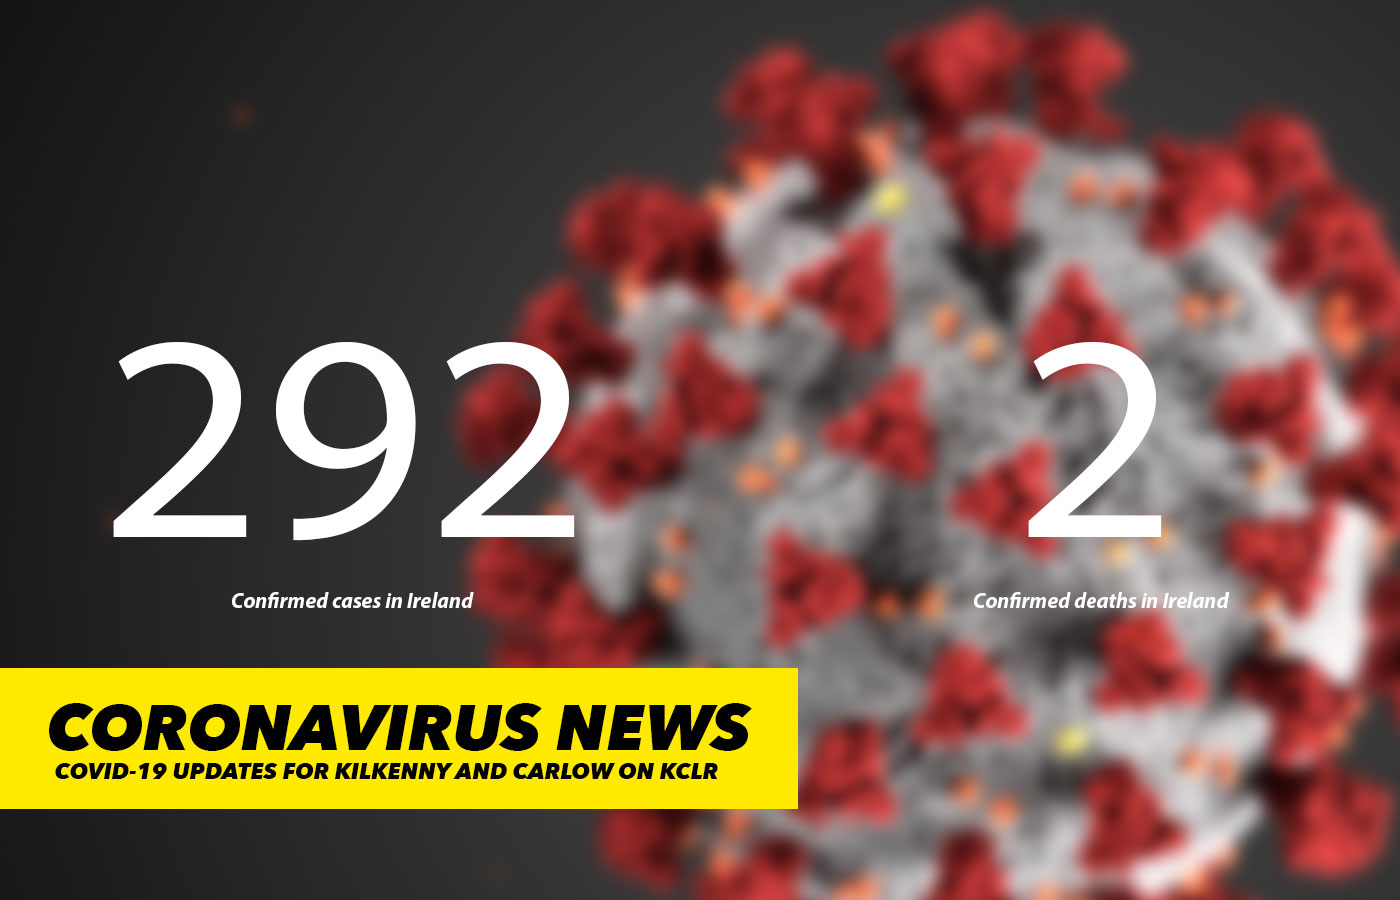 292 confirmed cases of coronavirus in Ireland